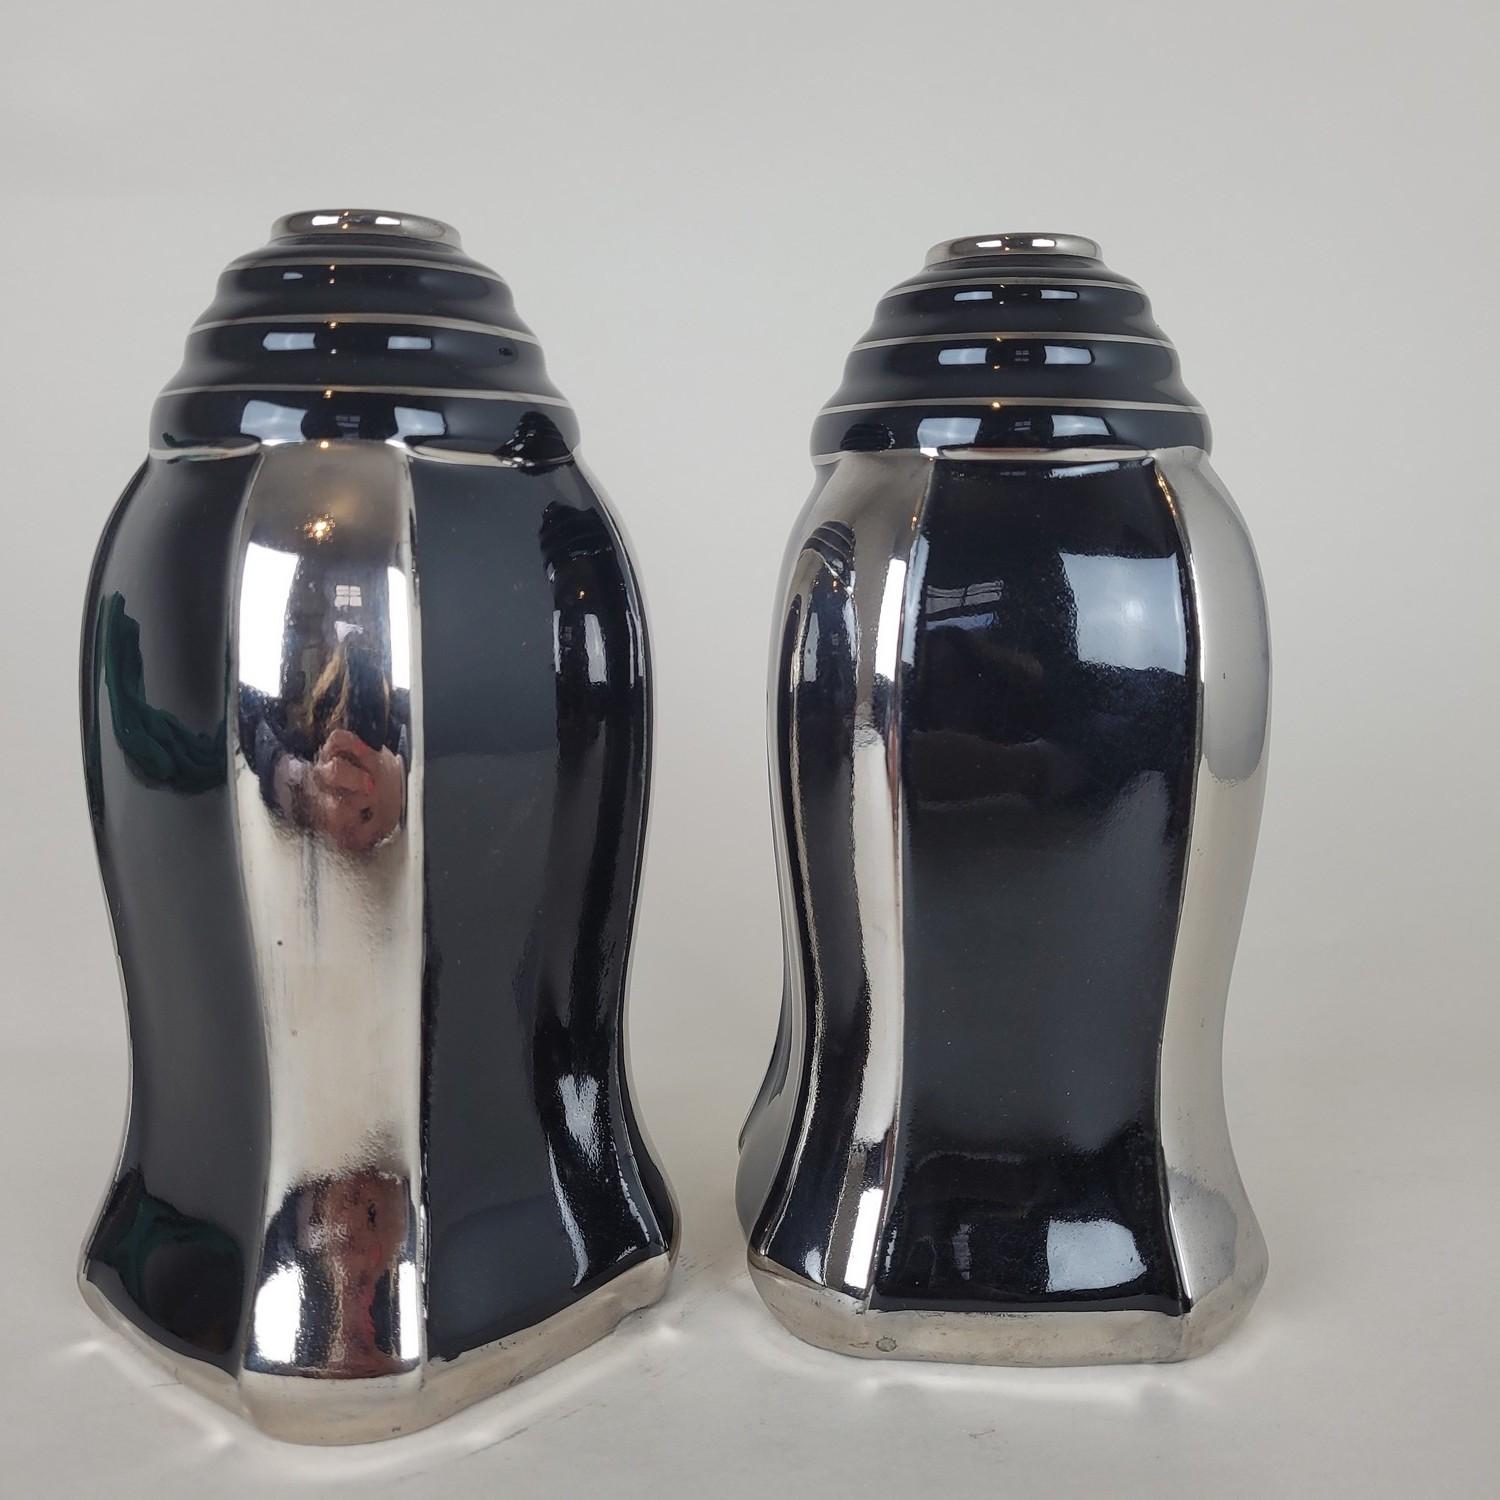 Paar schwarz glasierte Keramikvasen mit Silberdekor, Art déco

Diese 2 Vasen tragen unten die Marke ODYV mit der Nummer 492

Die Marke ODYV ist eine Sammlung von Art-Deco-Objekten, die zwischen 1929 und 1939 von der Fabrik Berlot-Mussier in Vierzon